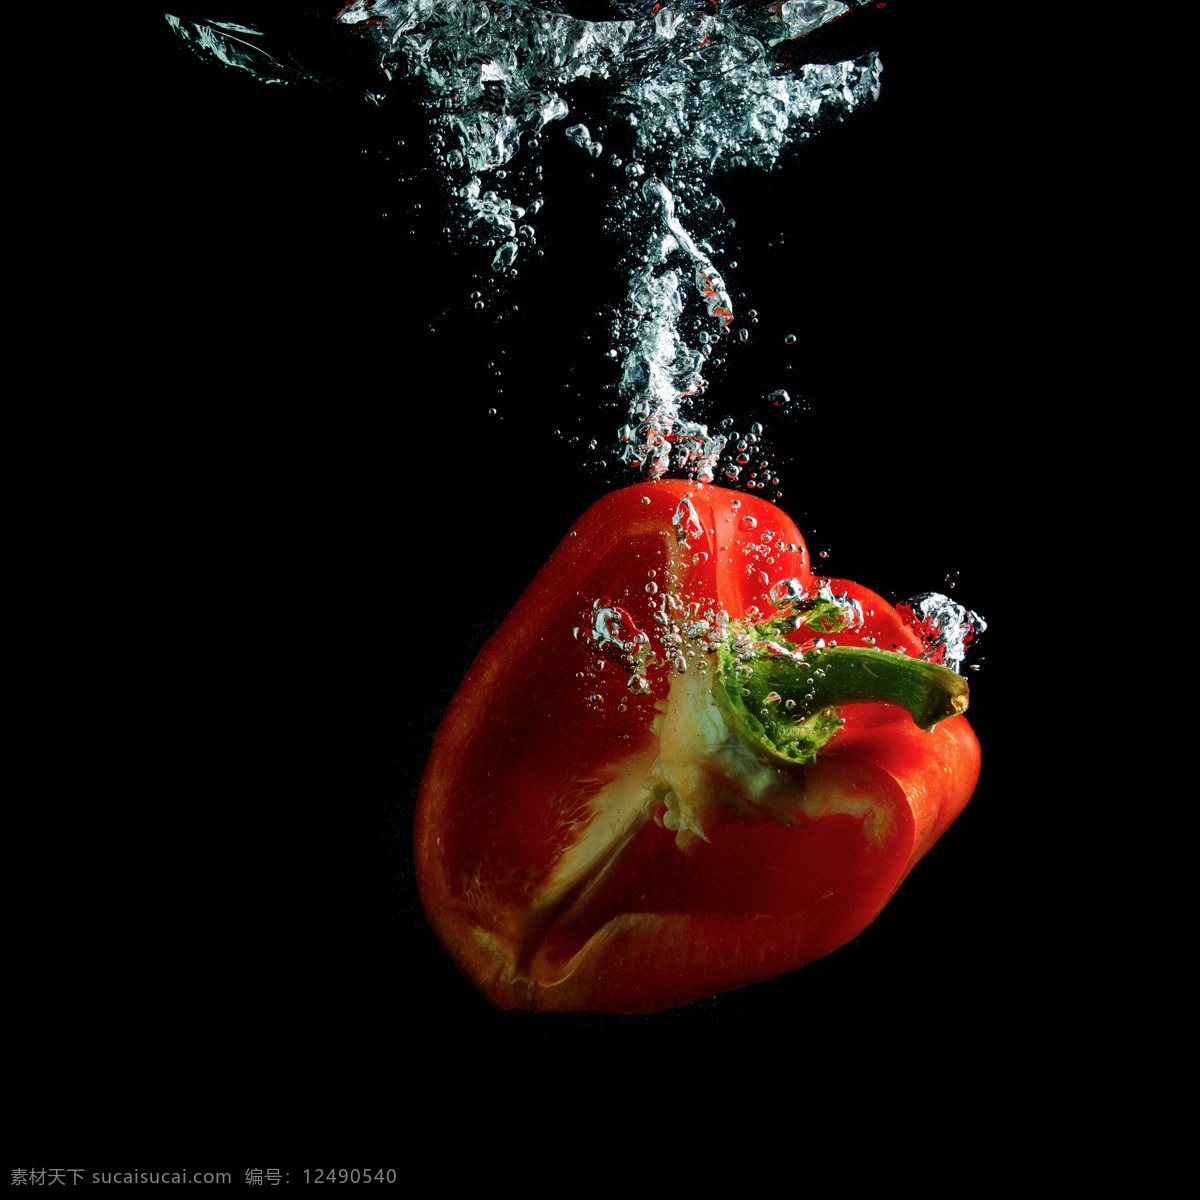 落入 水中 辣椒 掉 进水 里 蔬菜 放入 落入水中 新鲜蔬菜 动感水花 泡沫 水泡 水珠 蔬菜图片 餐饮美食